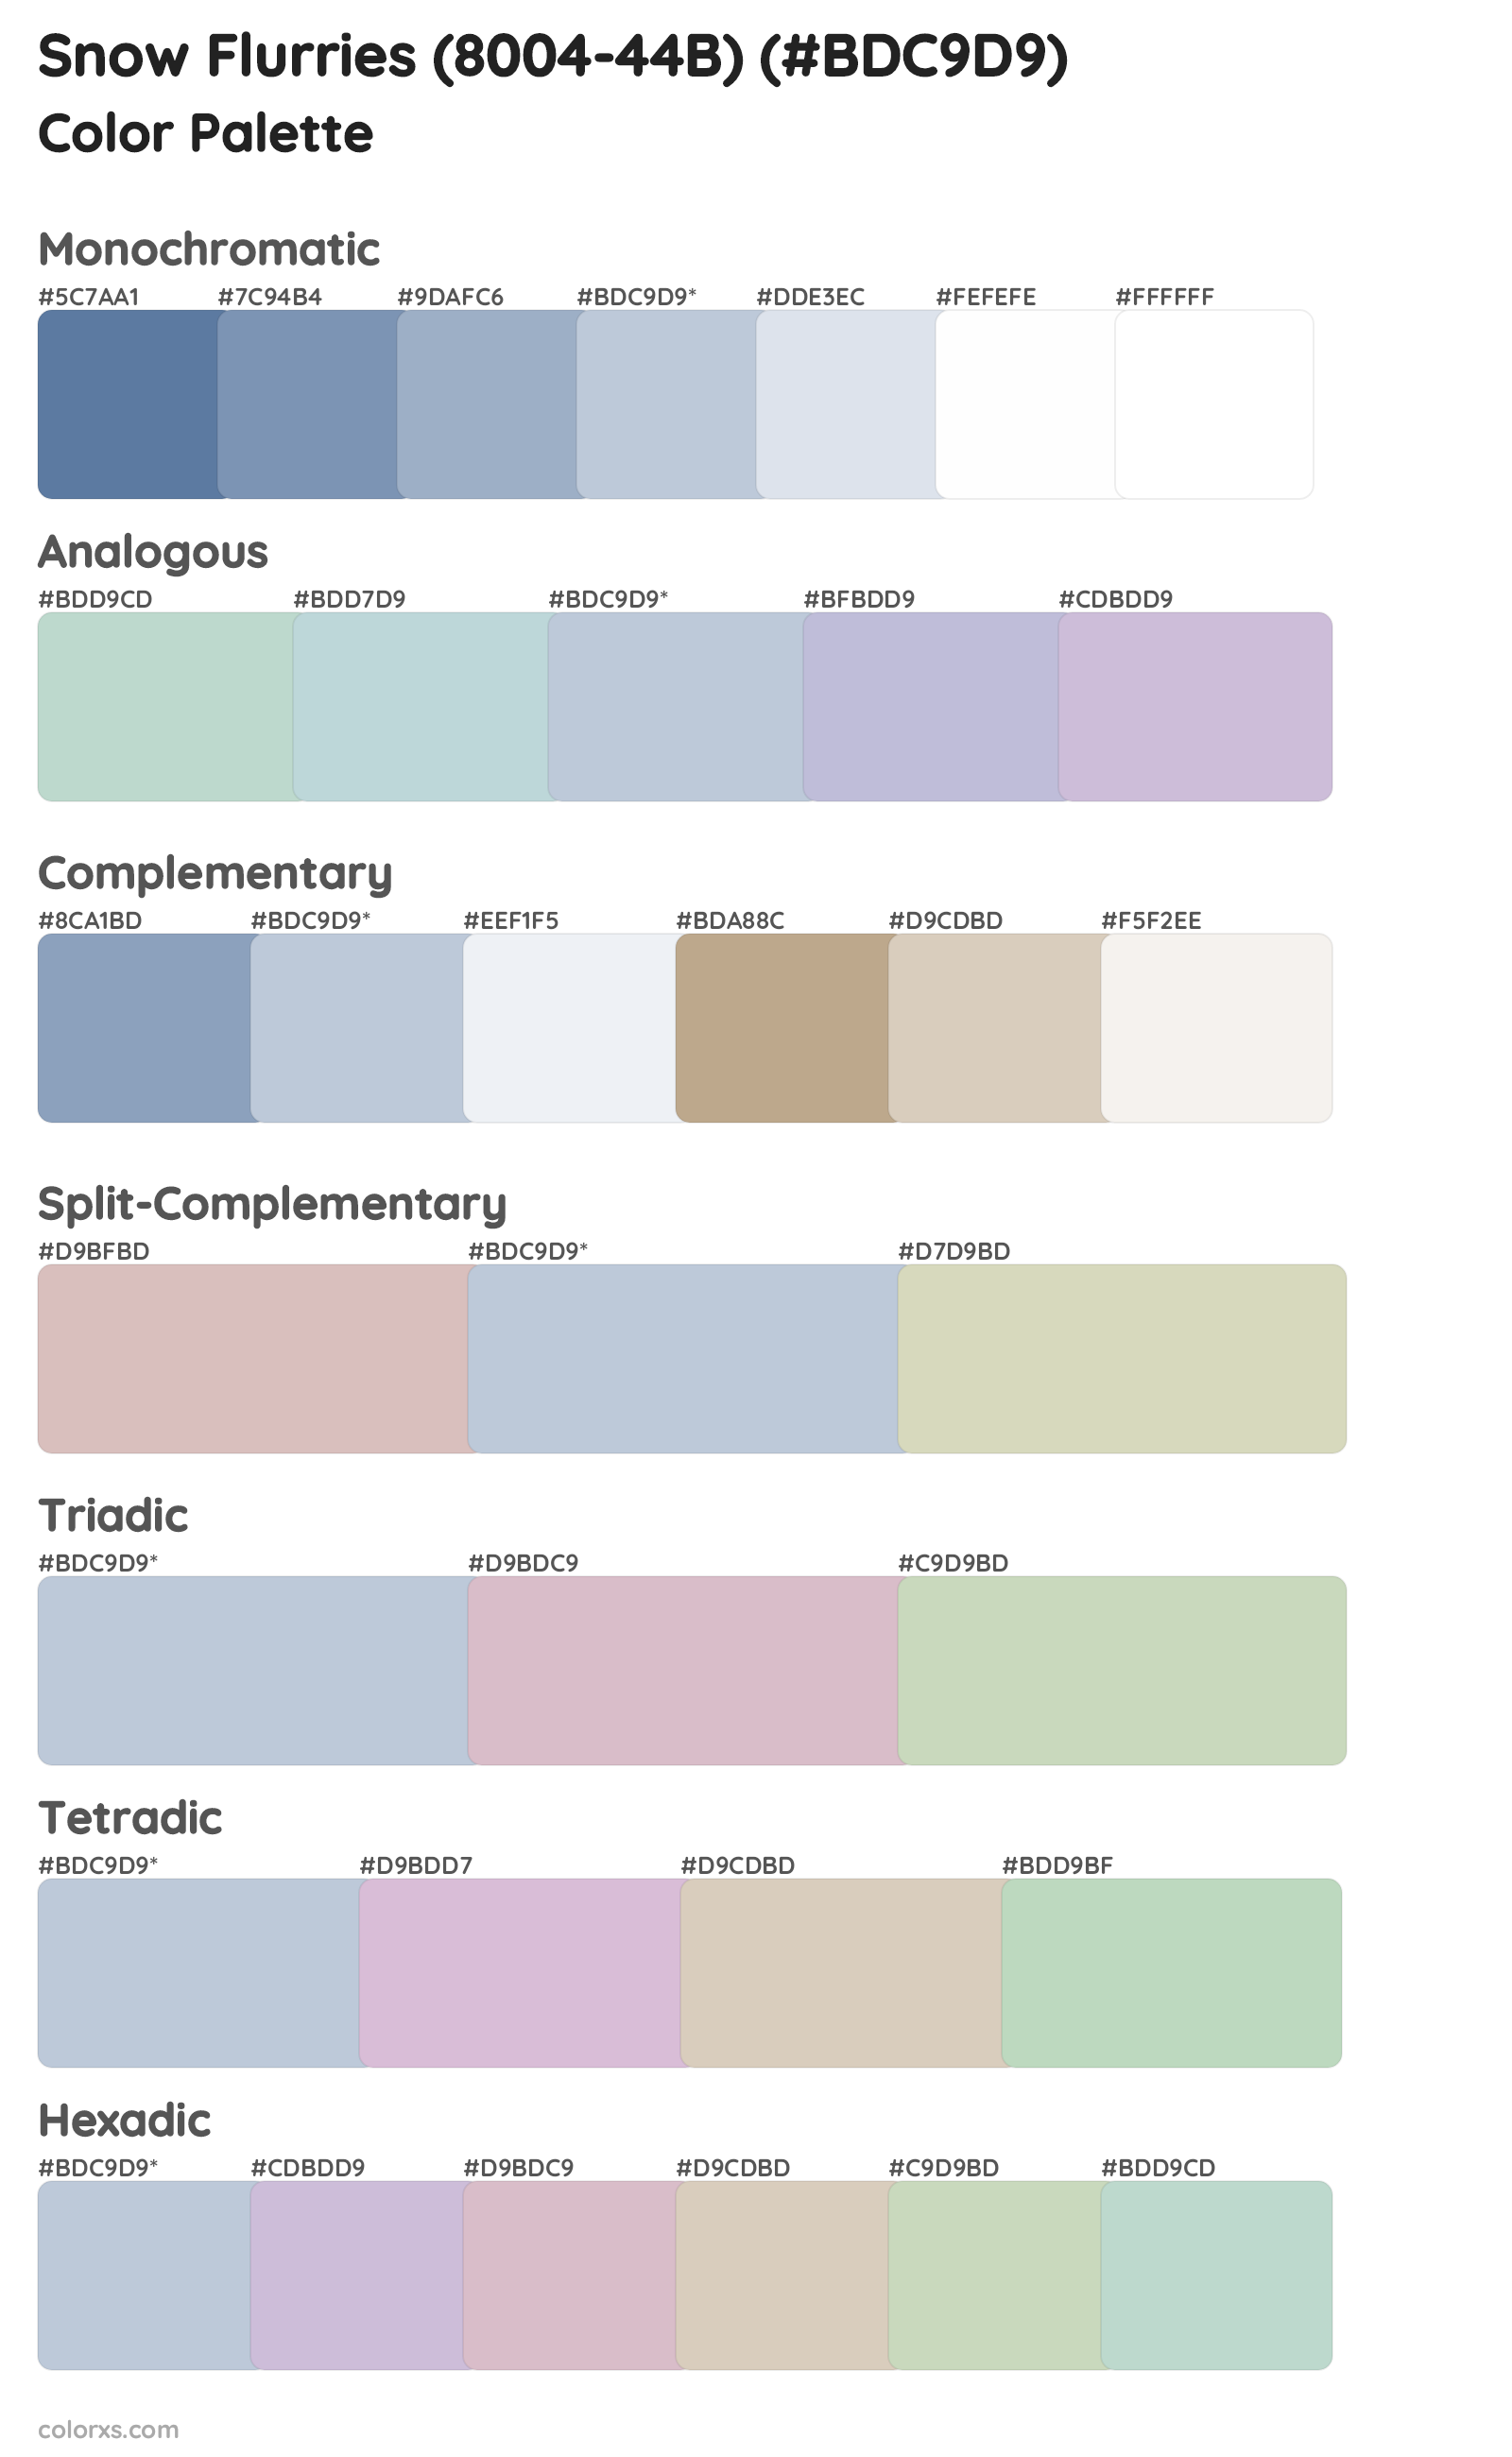 Snow Flurries (8004-44B) Color Scheme Palettes